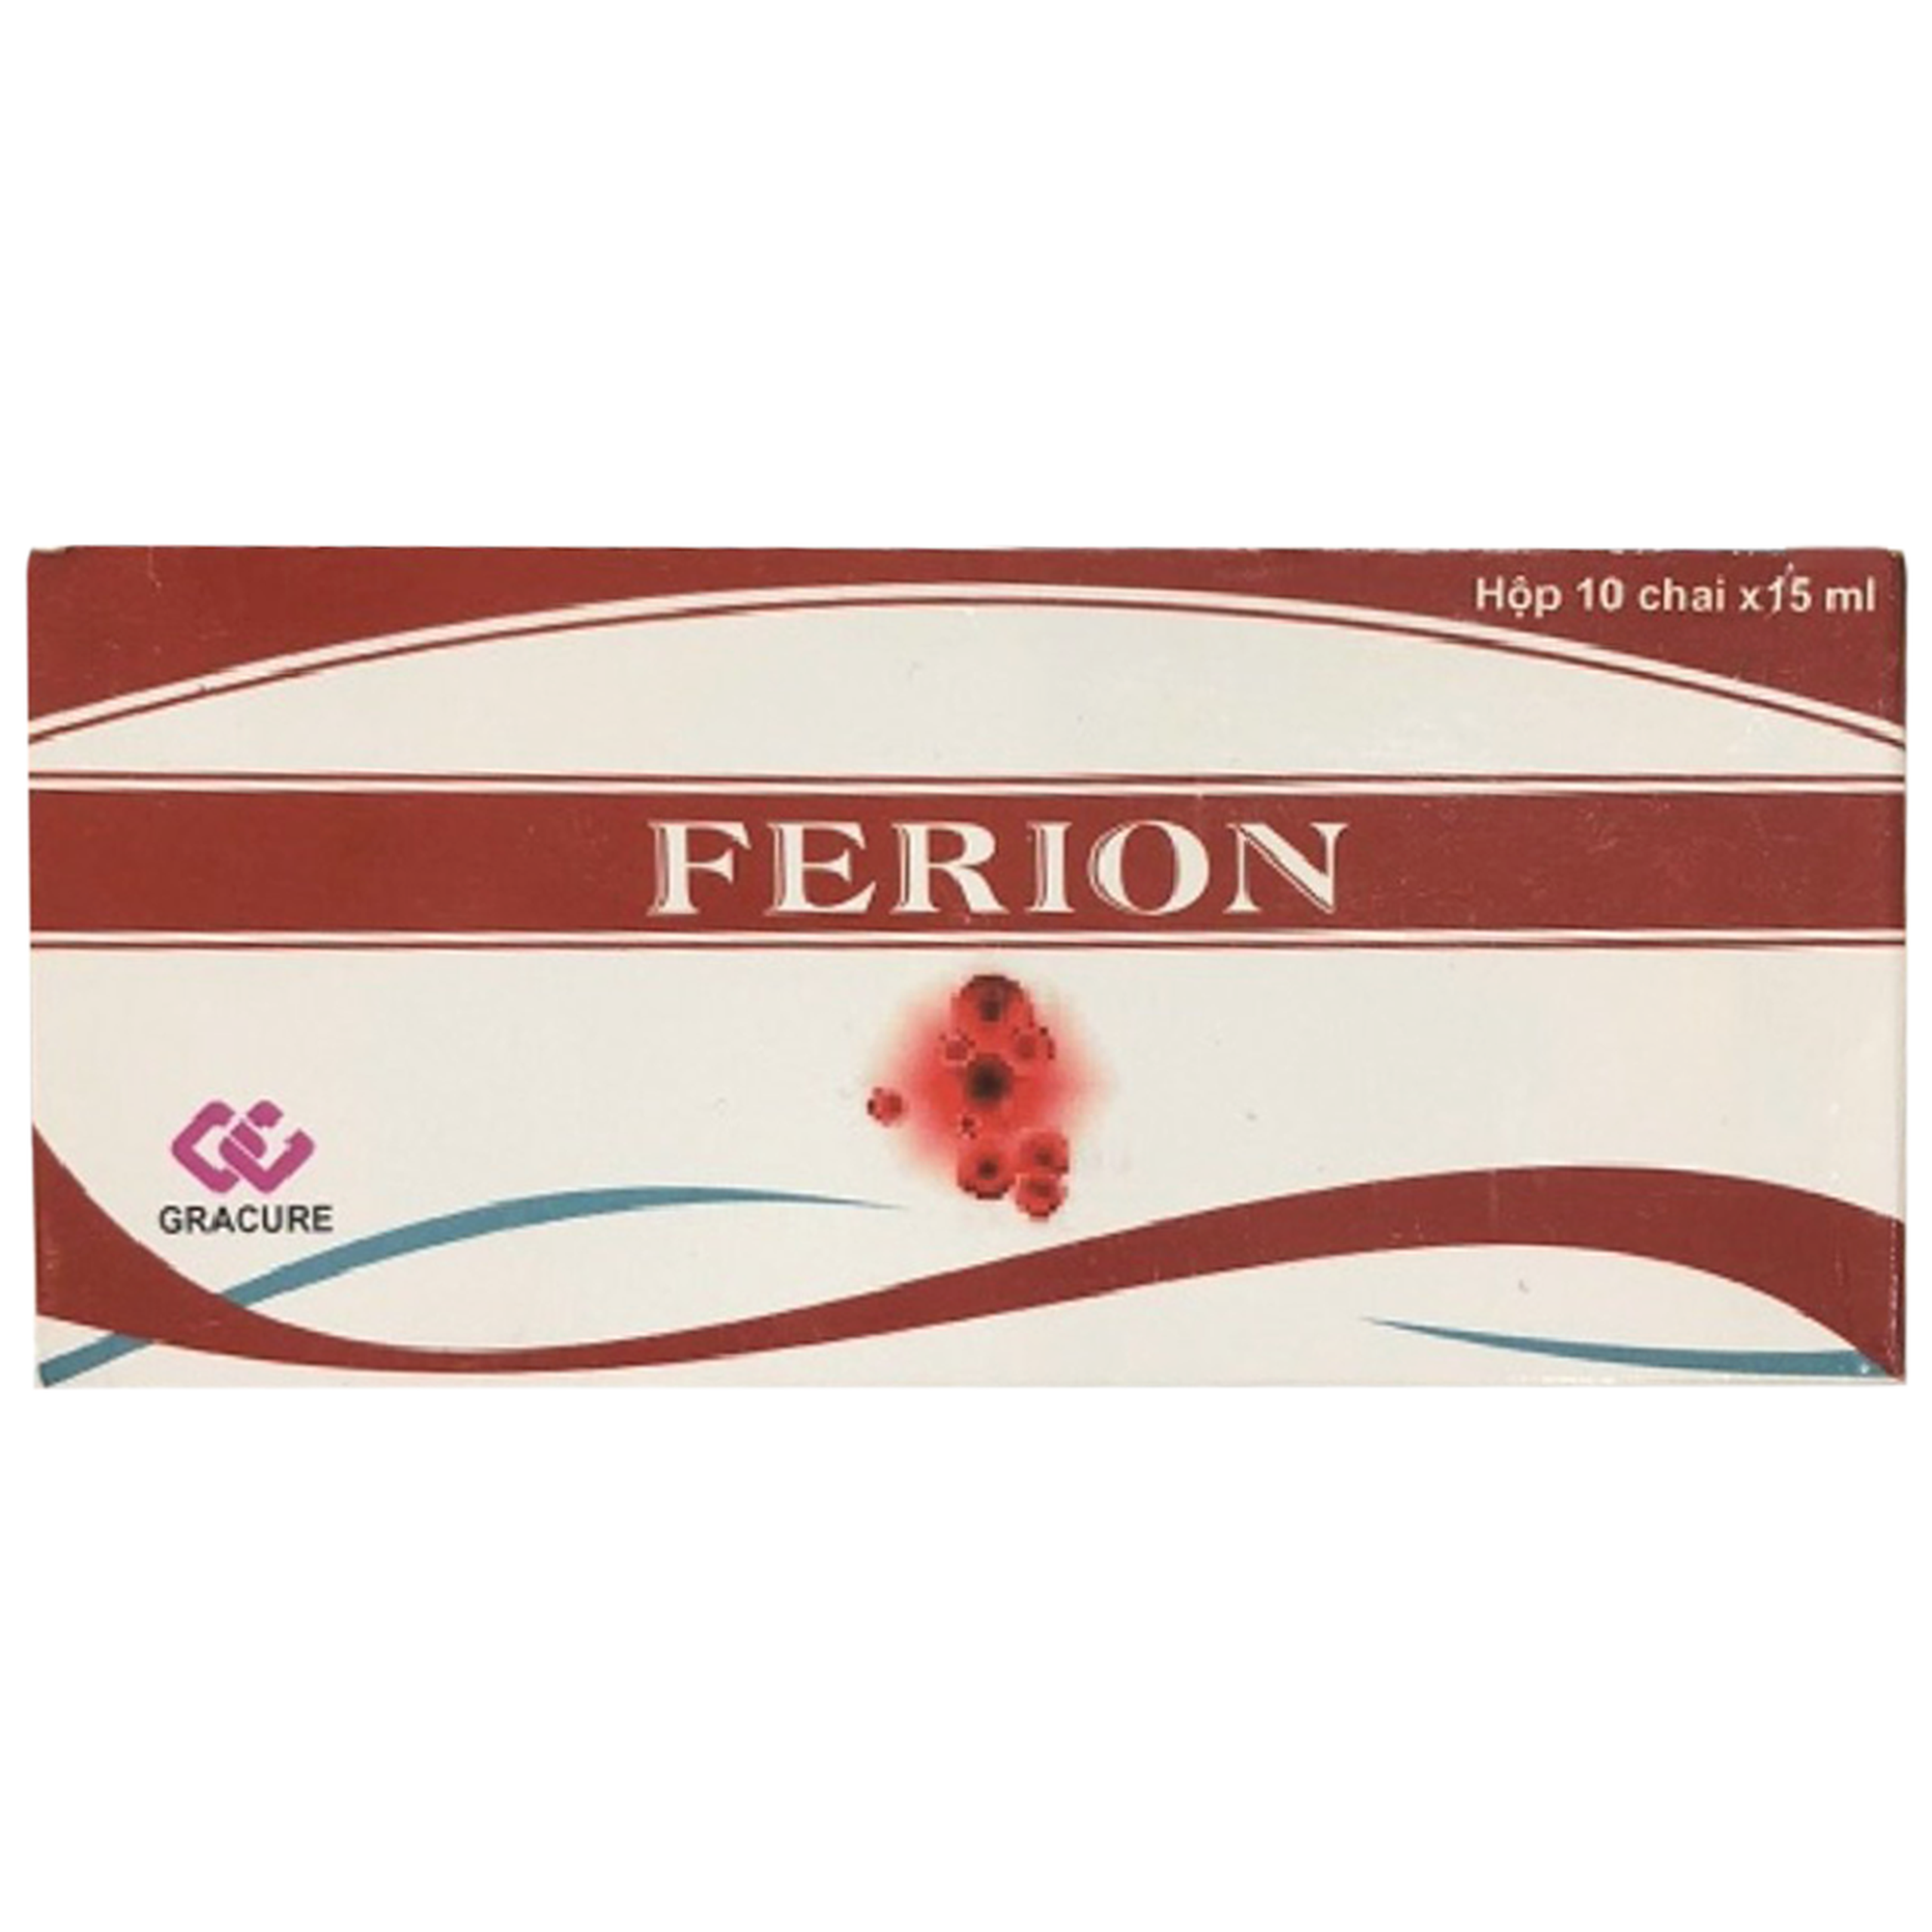 Dung dịch uống Ferion Gracure điều trị tình trạng thiếu sắt và thiếu máu do thiếu sắt (10 chai x 15ml)